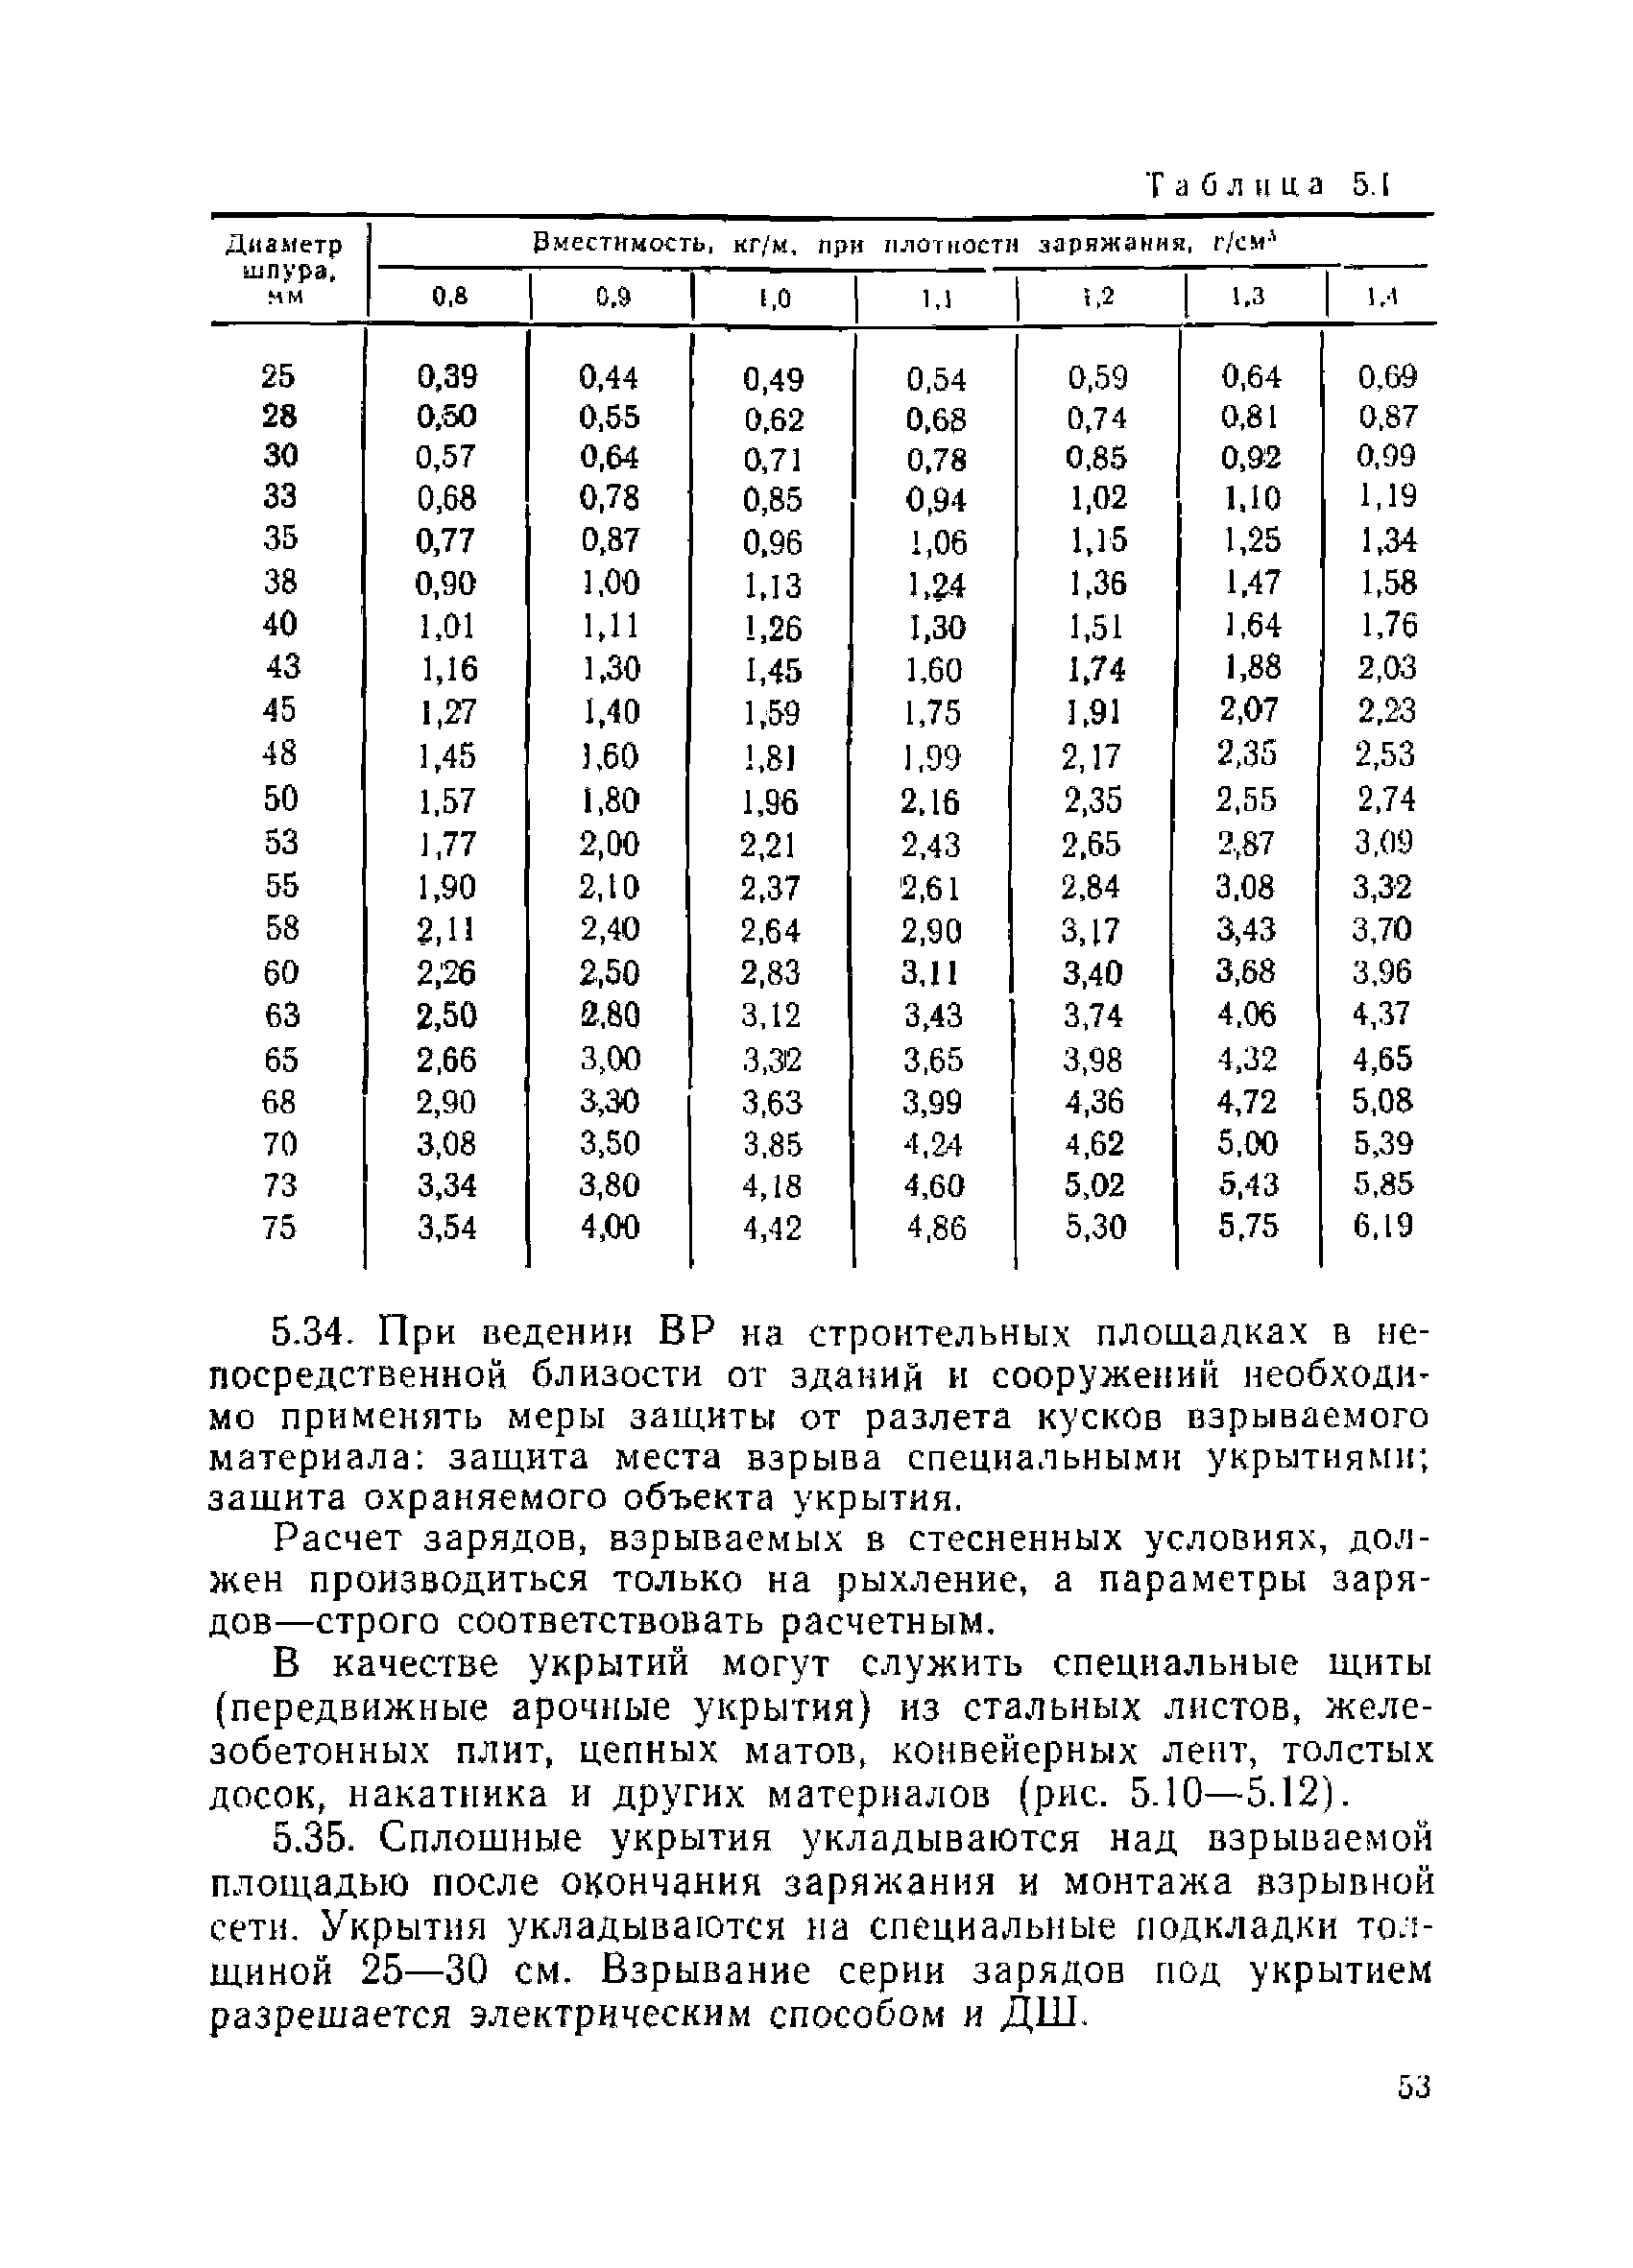 ВСН 213-92